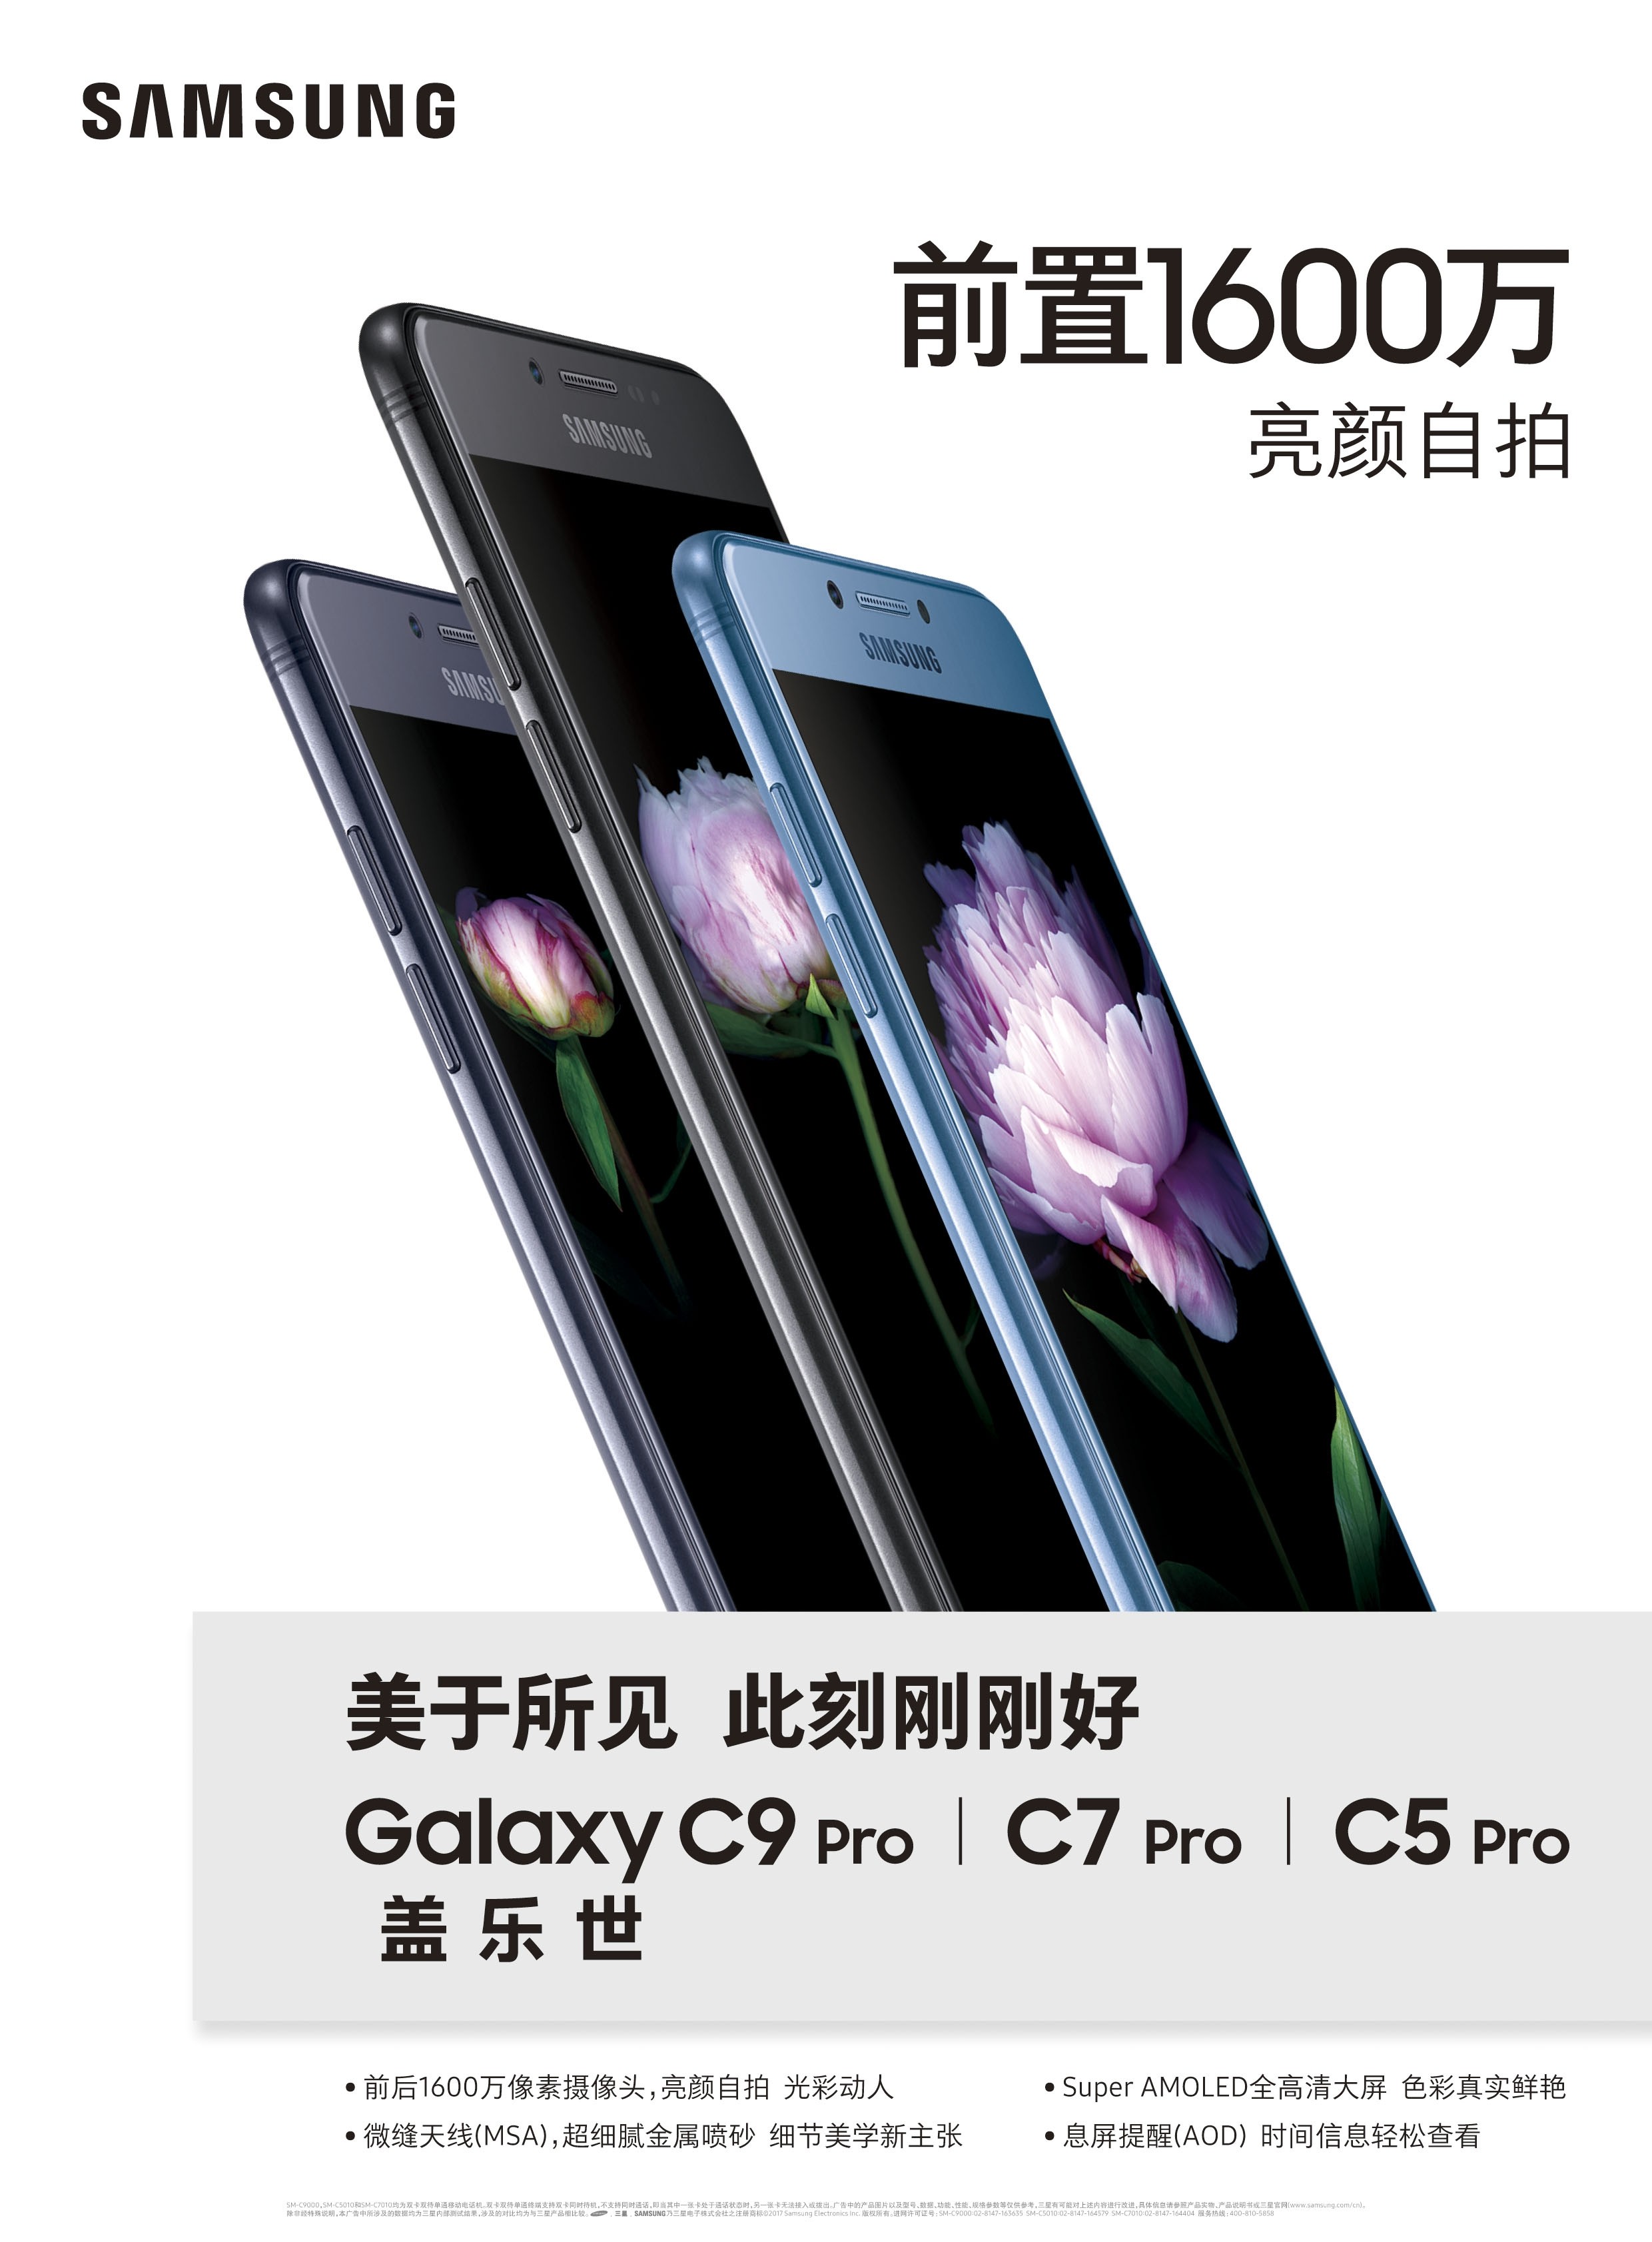 سعر ومواصفات Samsung Galaxy C5 Pro | سامسونج جالاكسي C5 Pro | اراموبي